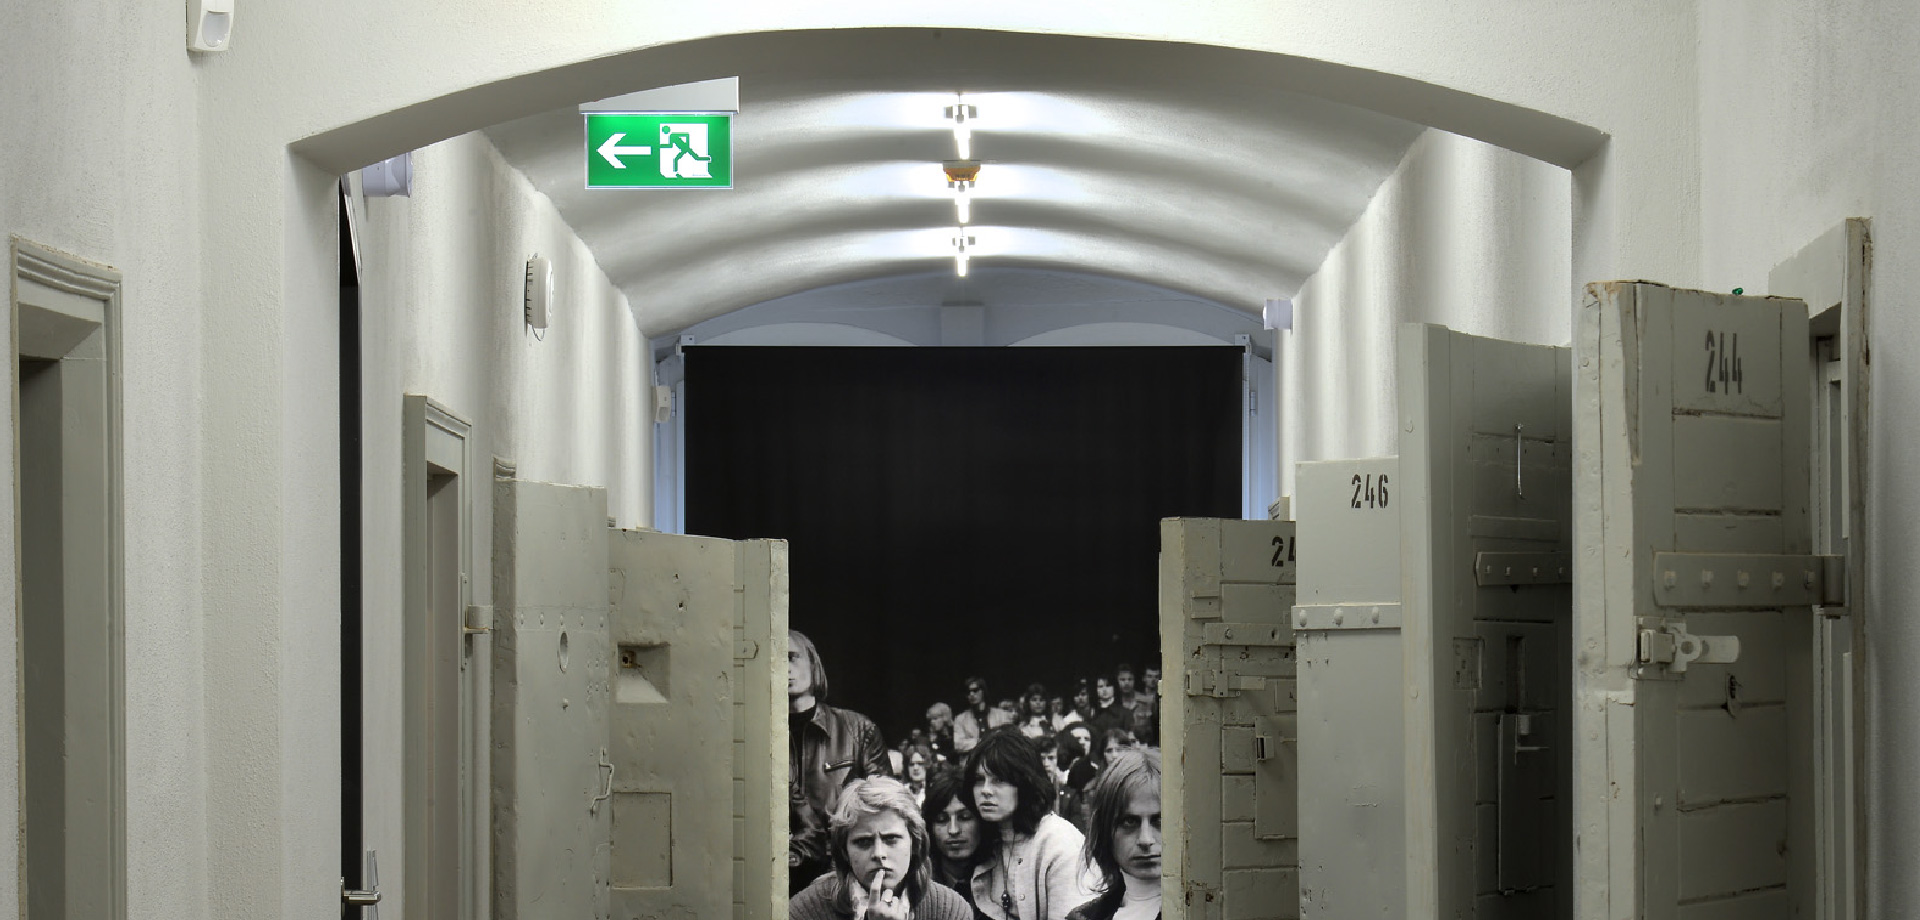 Ein Gang mit offenen Hafttüren, im Hintergrund ist ein Foto in schwarz/weiß mit jungen Menschen zu sehen